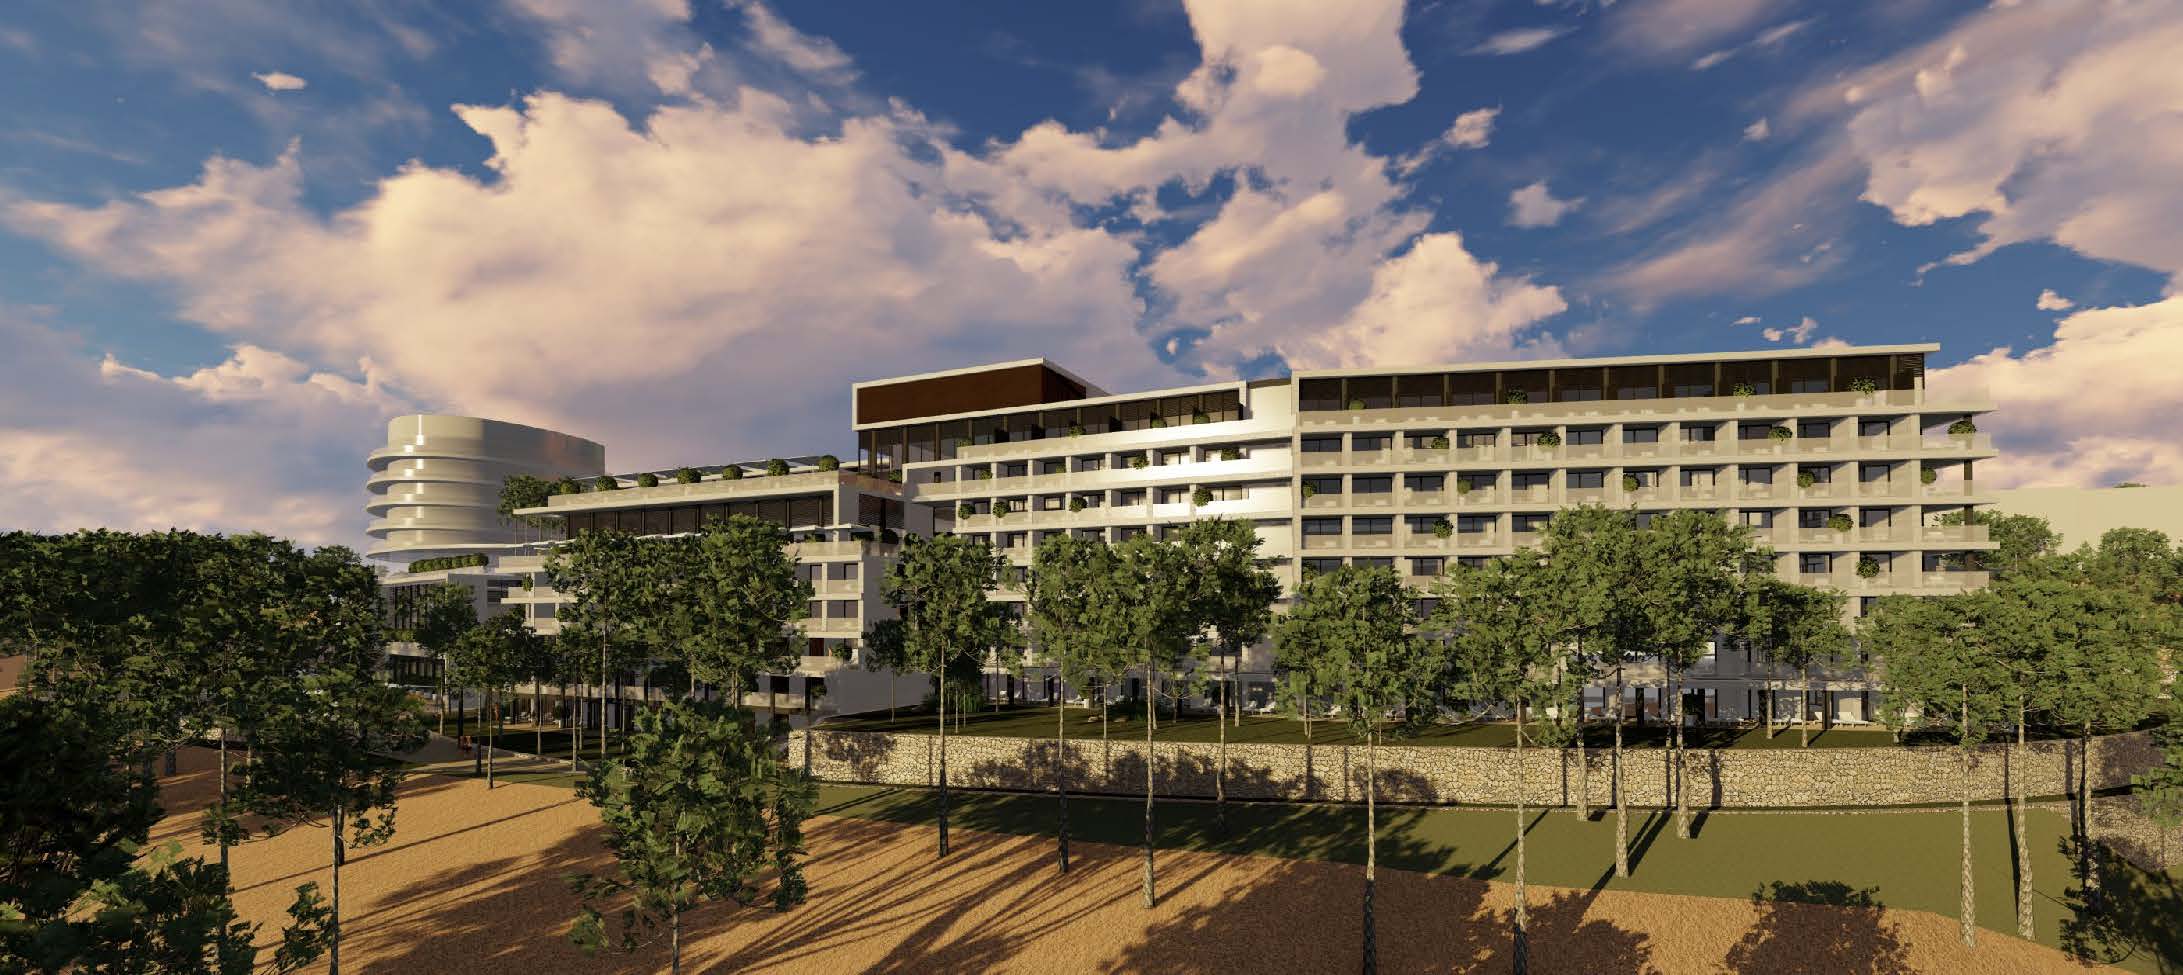 מותג היוקרה Pullman של רשת מלונות ACCOR יפתח לראשונה מלון בישראל